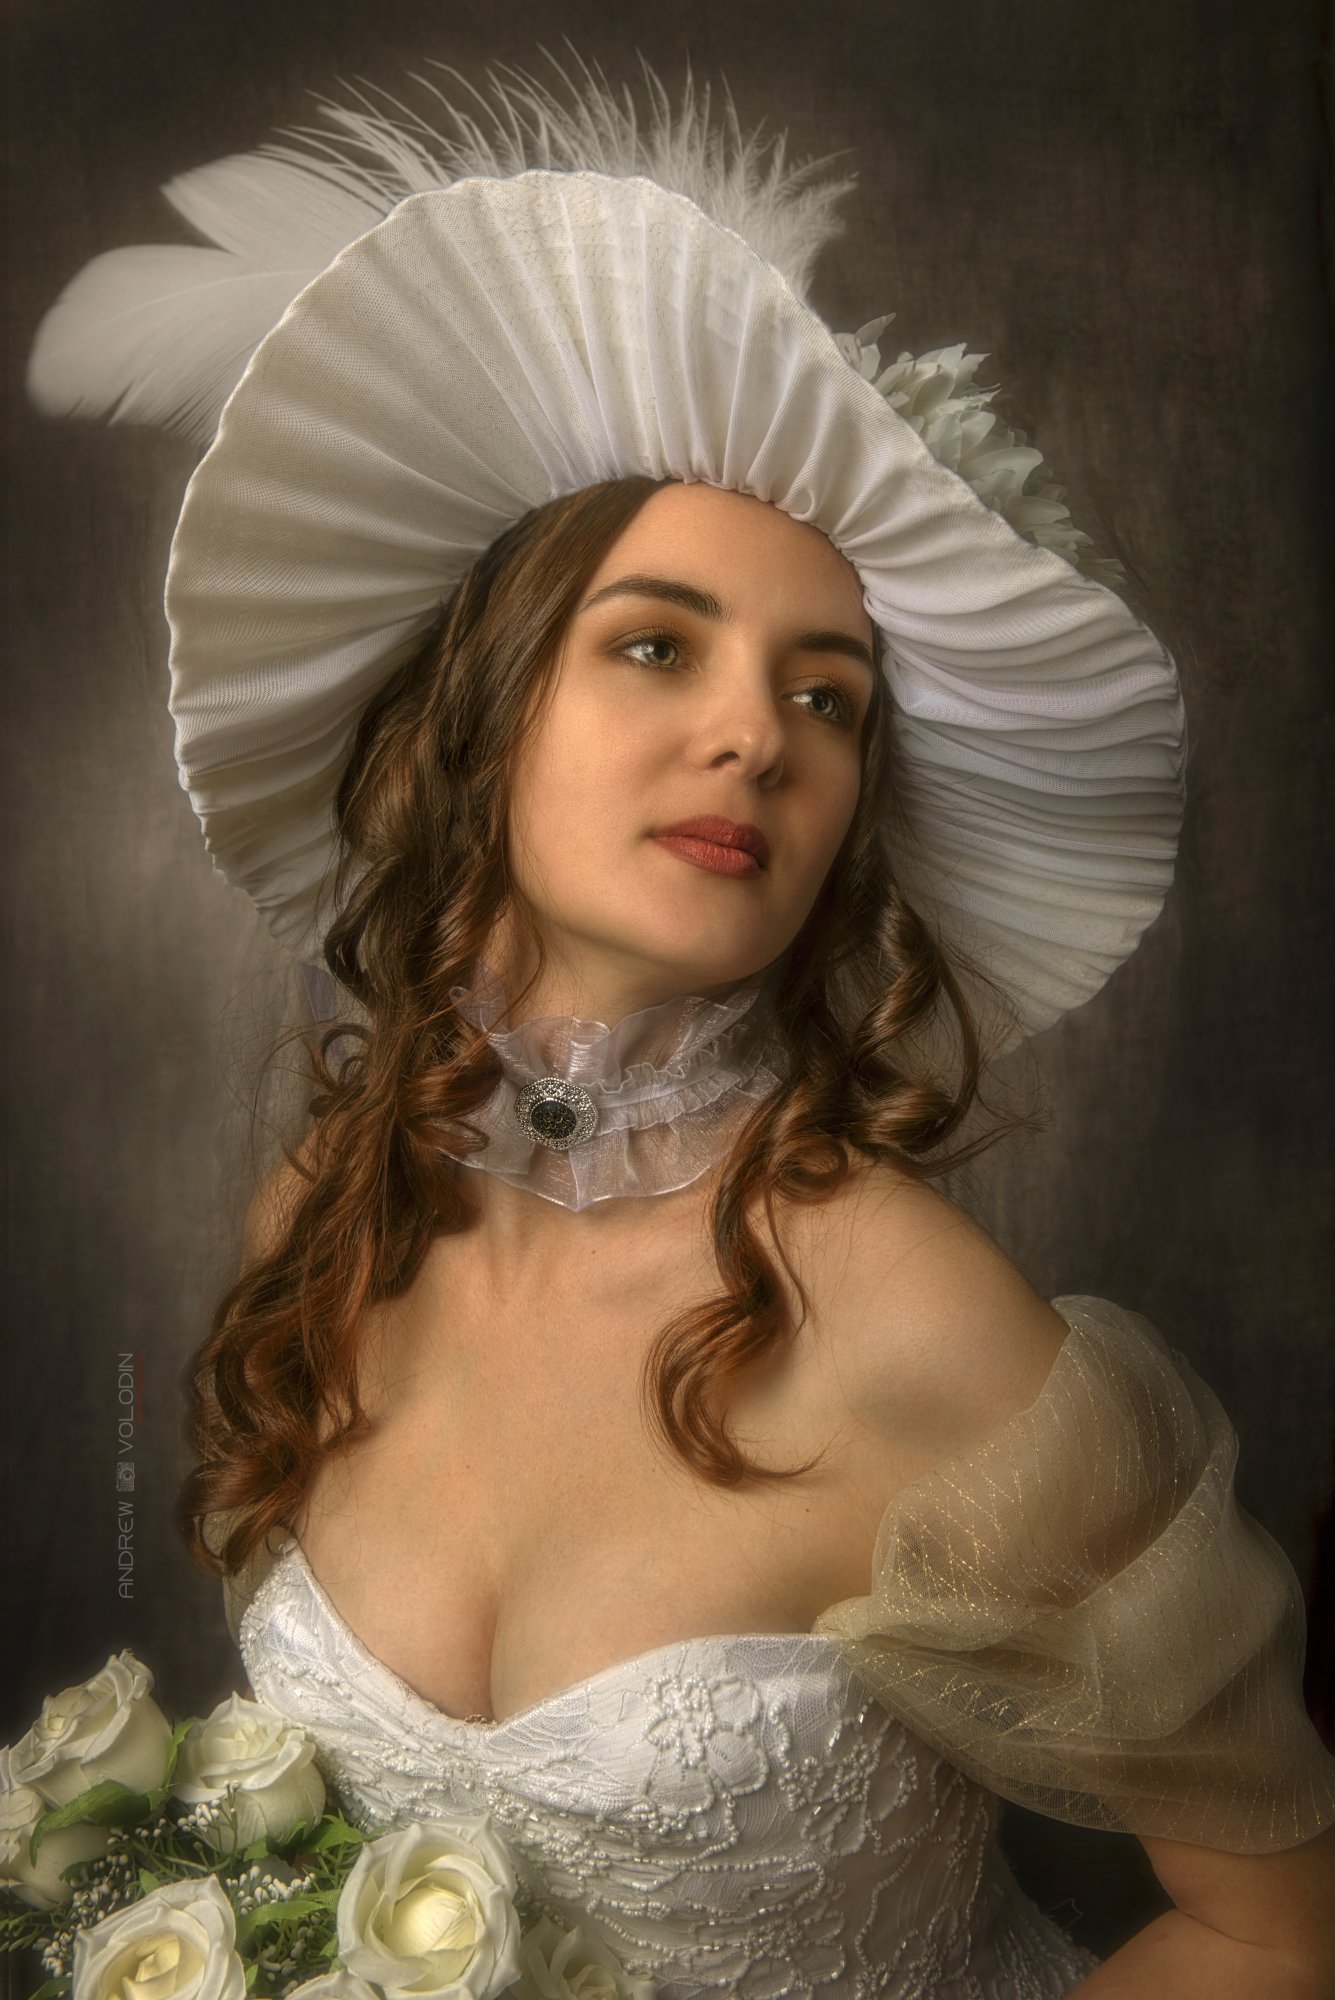 девушка шляпка цветы розы винтаж портрет, Андрей Володин